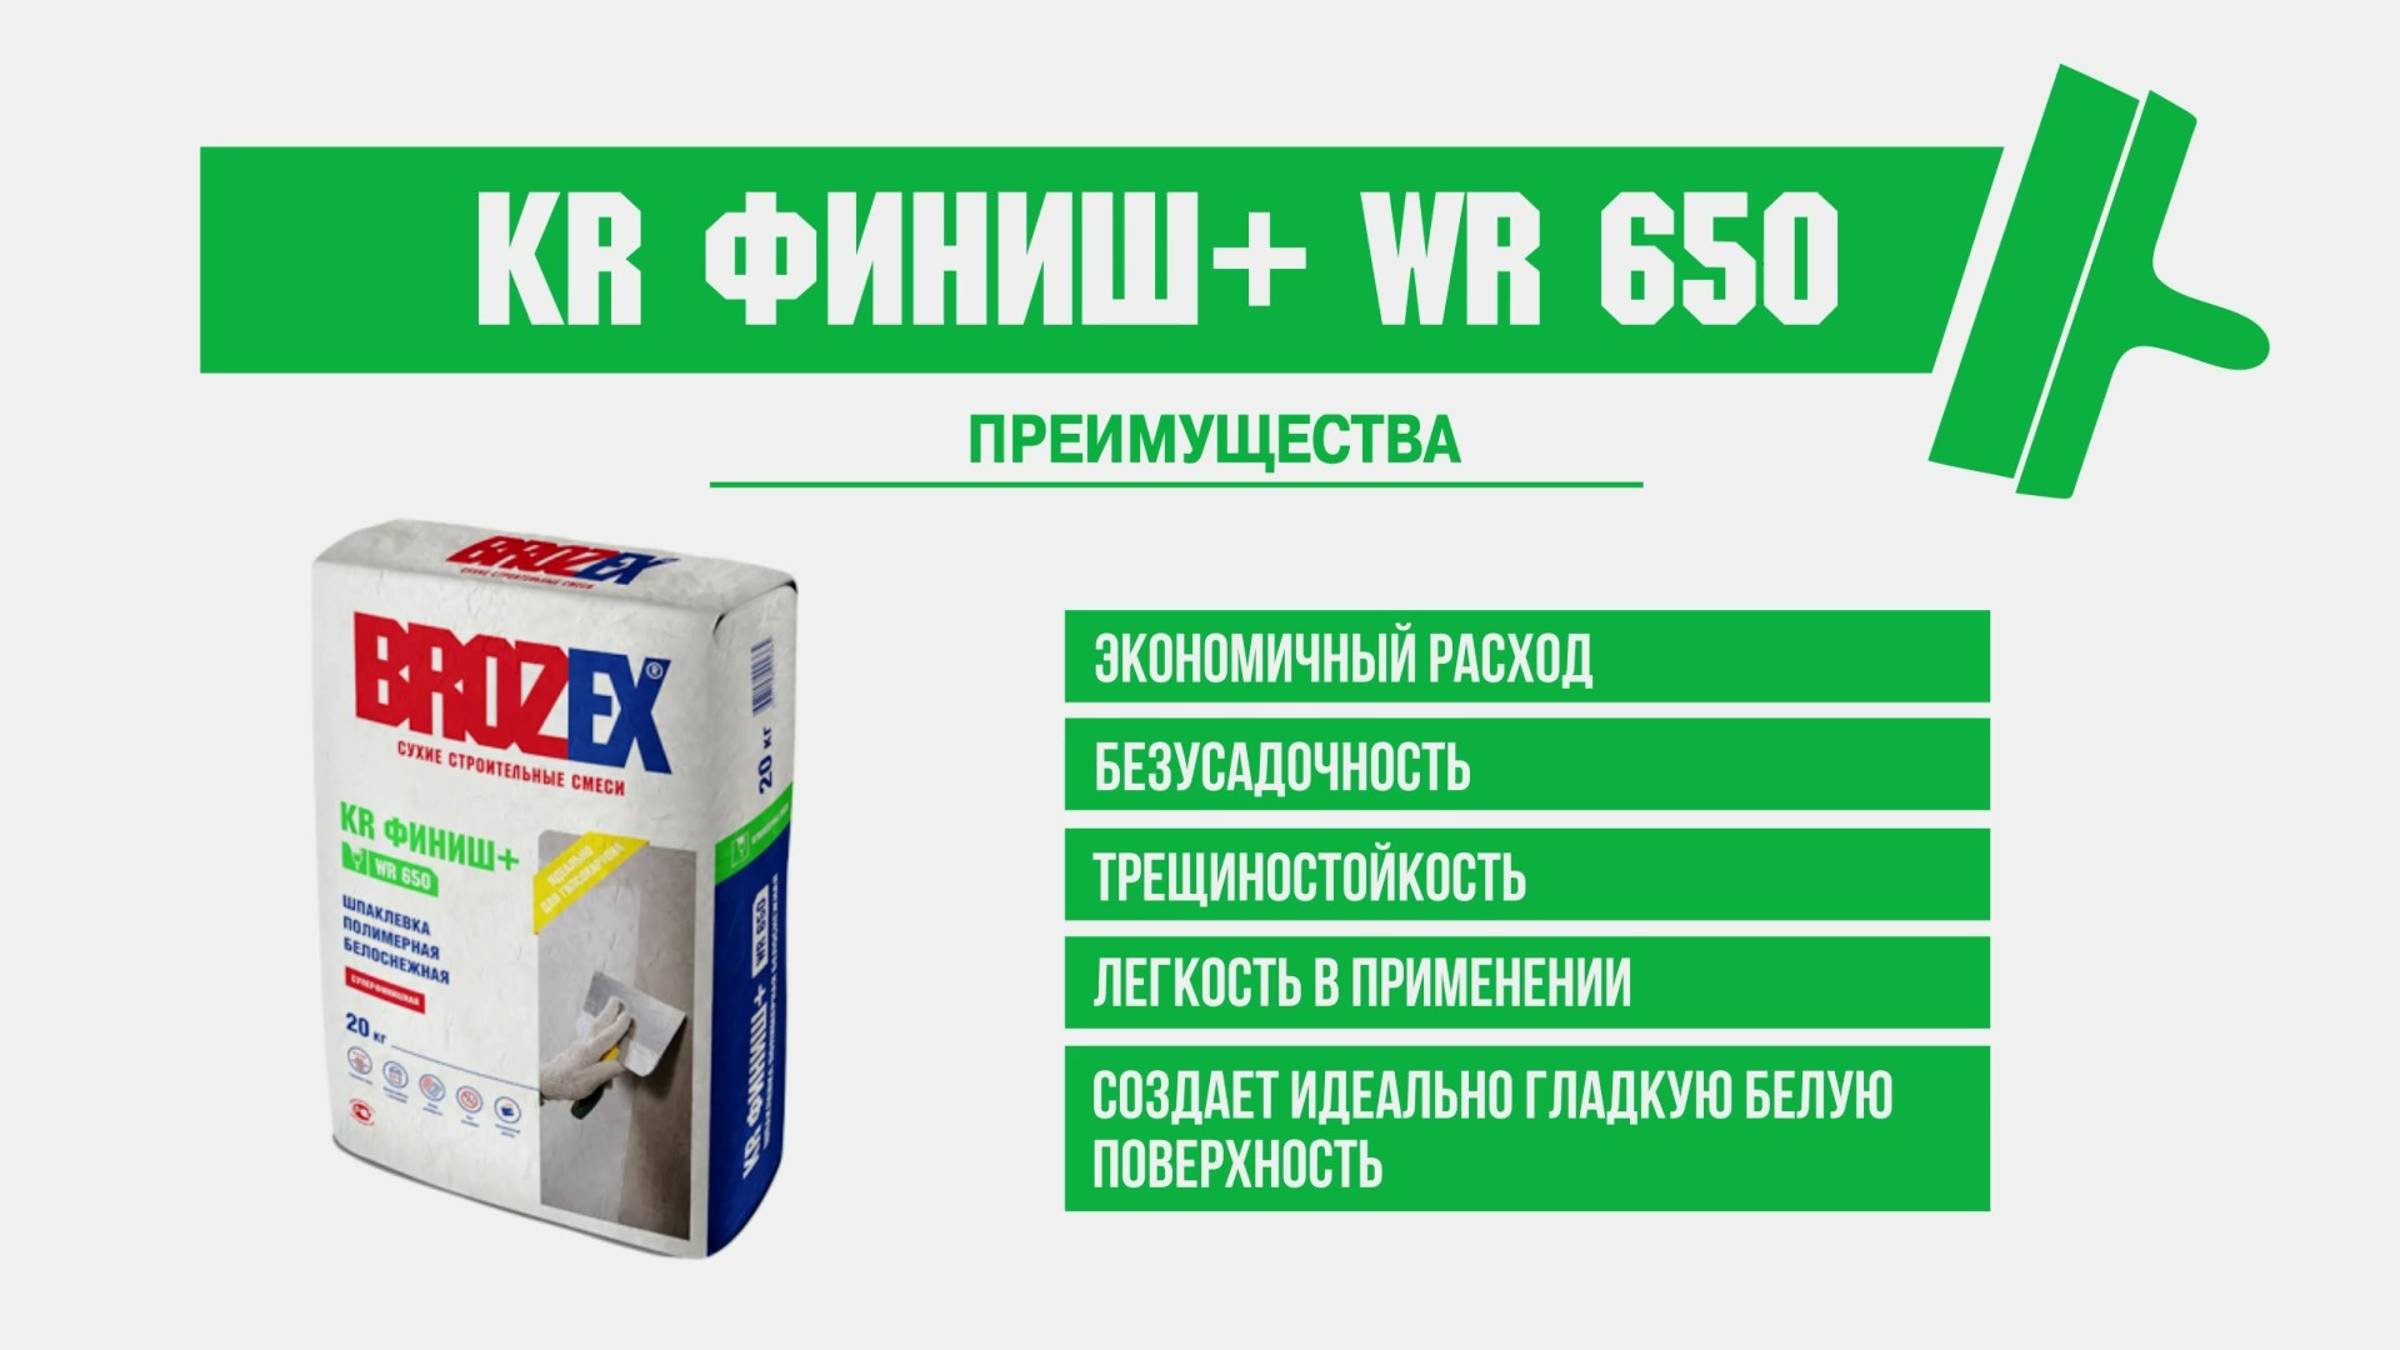 Шпаклевка полимерная BROZEX KR Финиш+ WR 650: обзор, советы